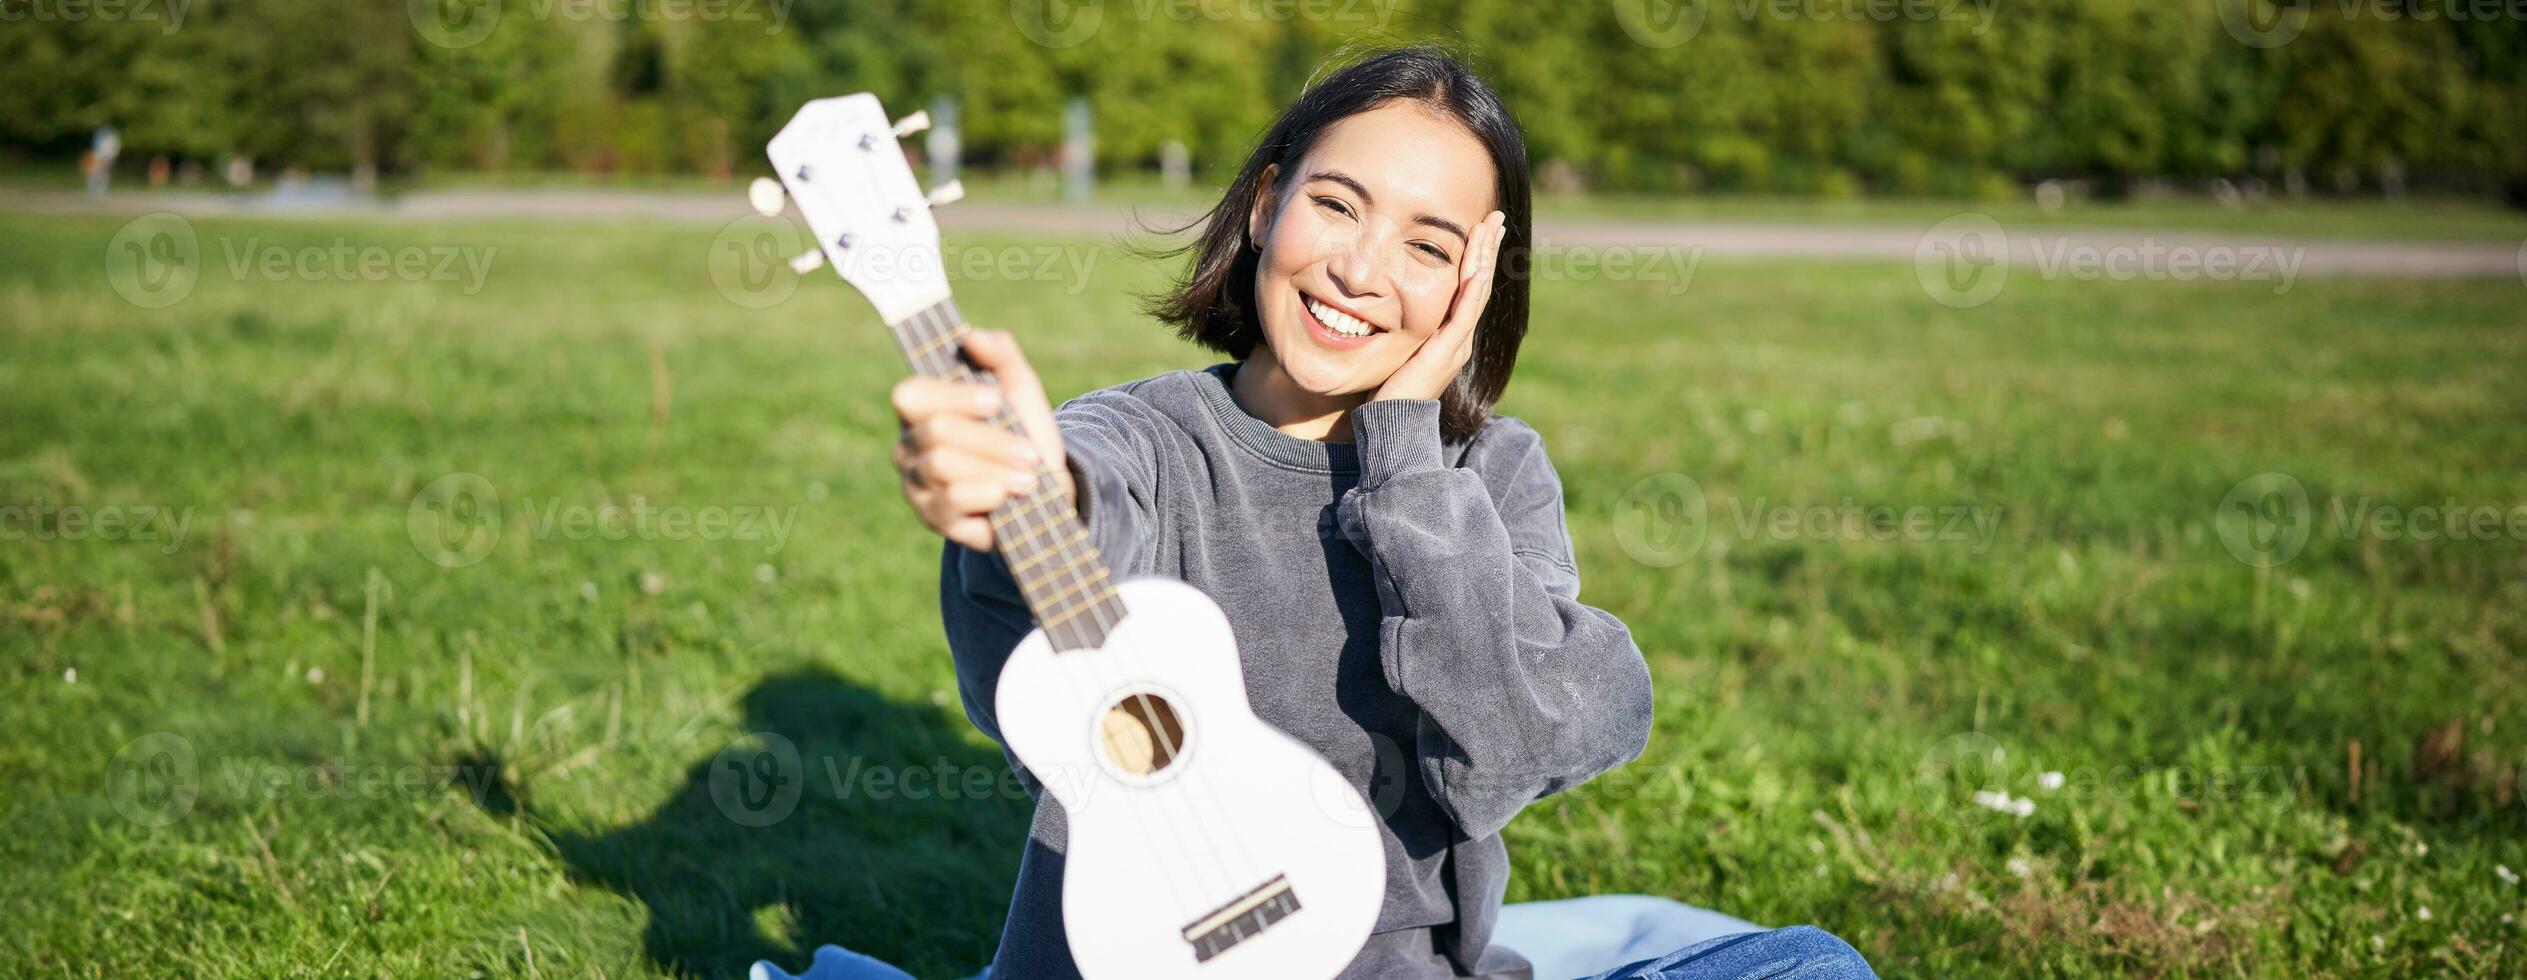 hermosa asiático niña con contento sonrisa, muestra su ukelele, se sienta fuera de en parque en césped, relaja con música foto